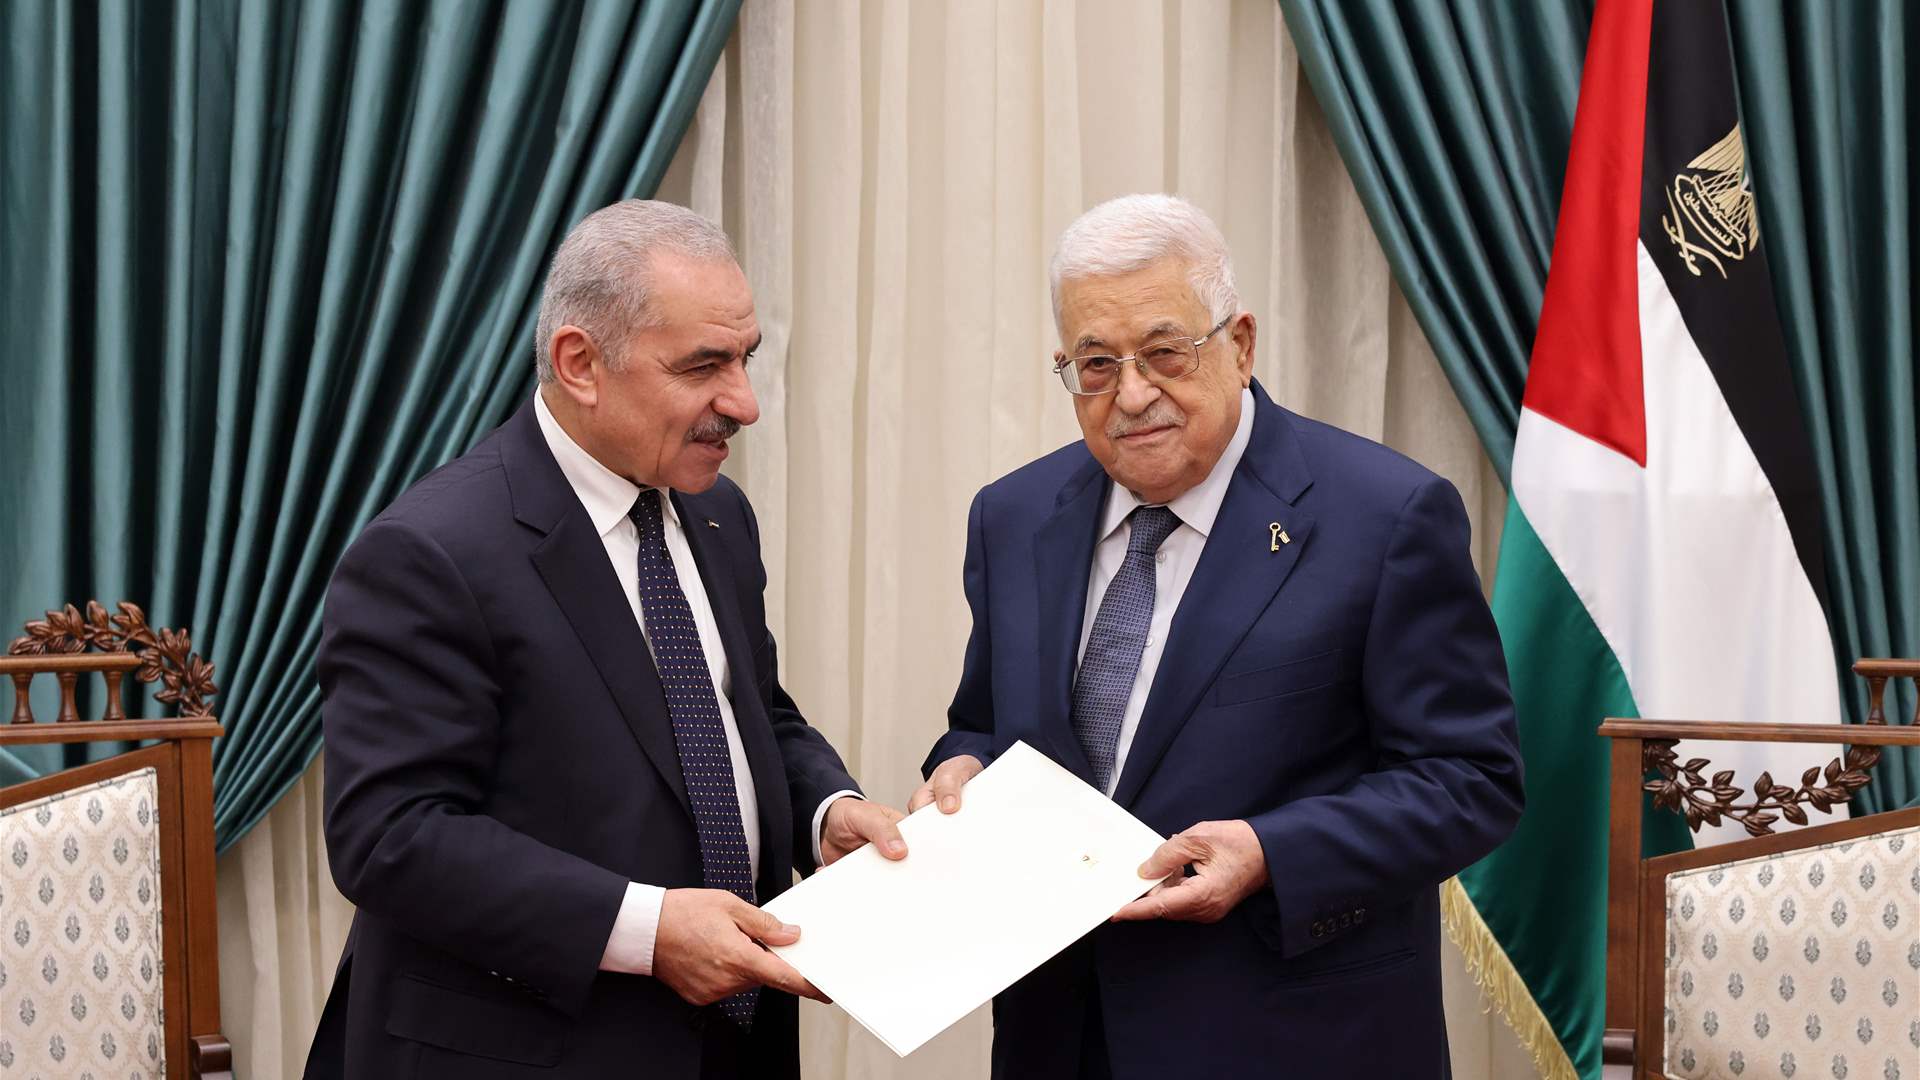 الرئيس الفلسطيني يقبل استقالة حكومة اشتية 